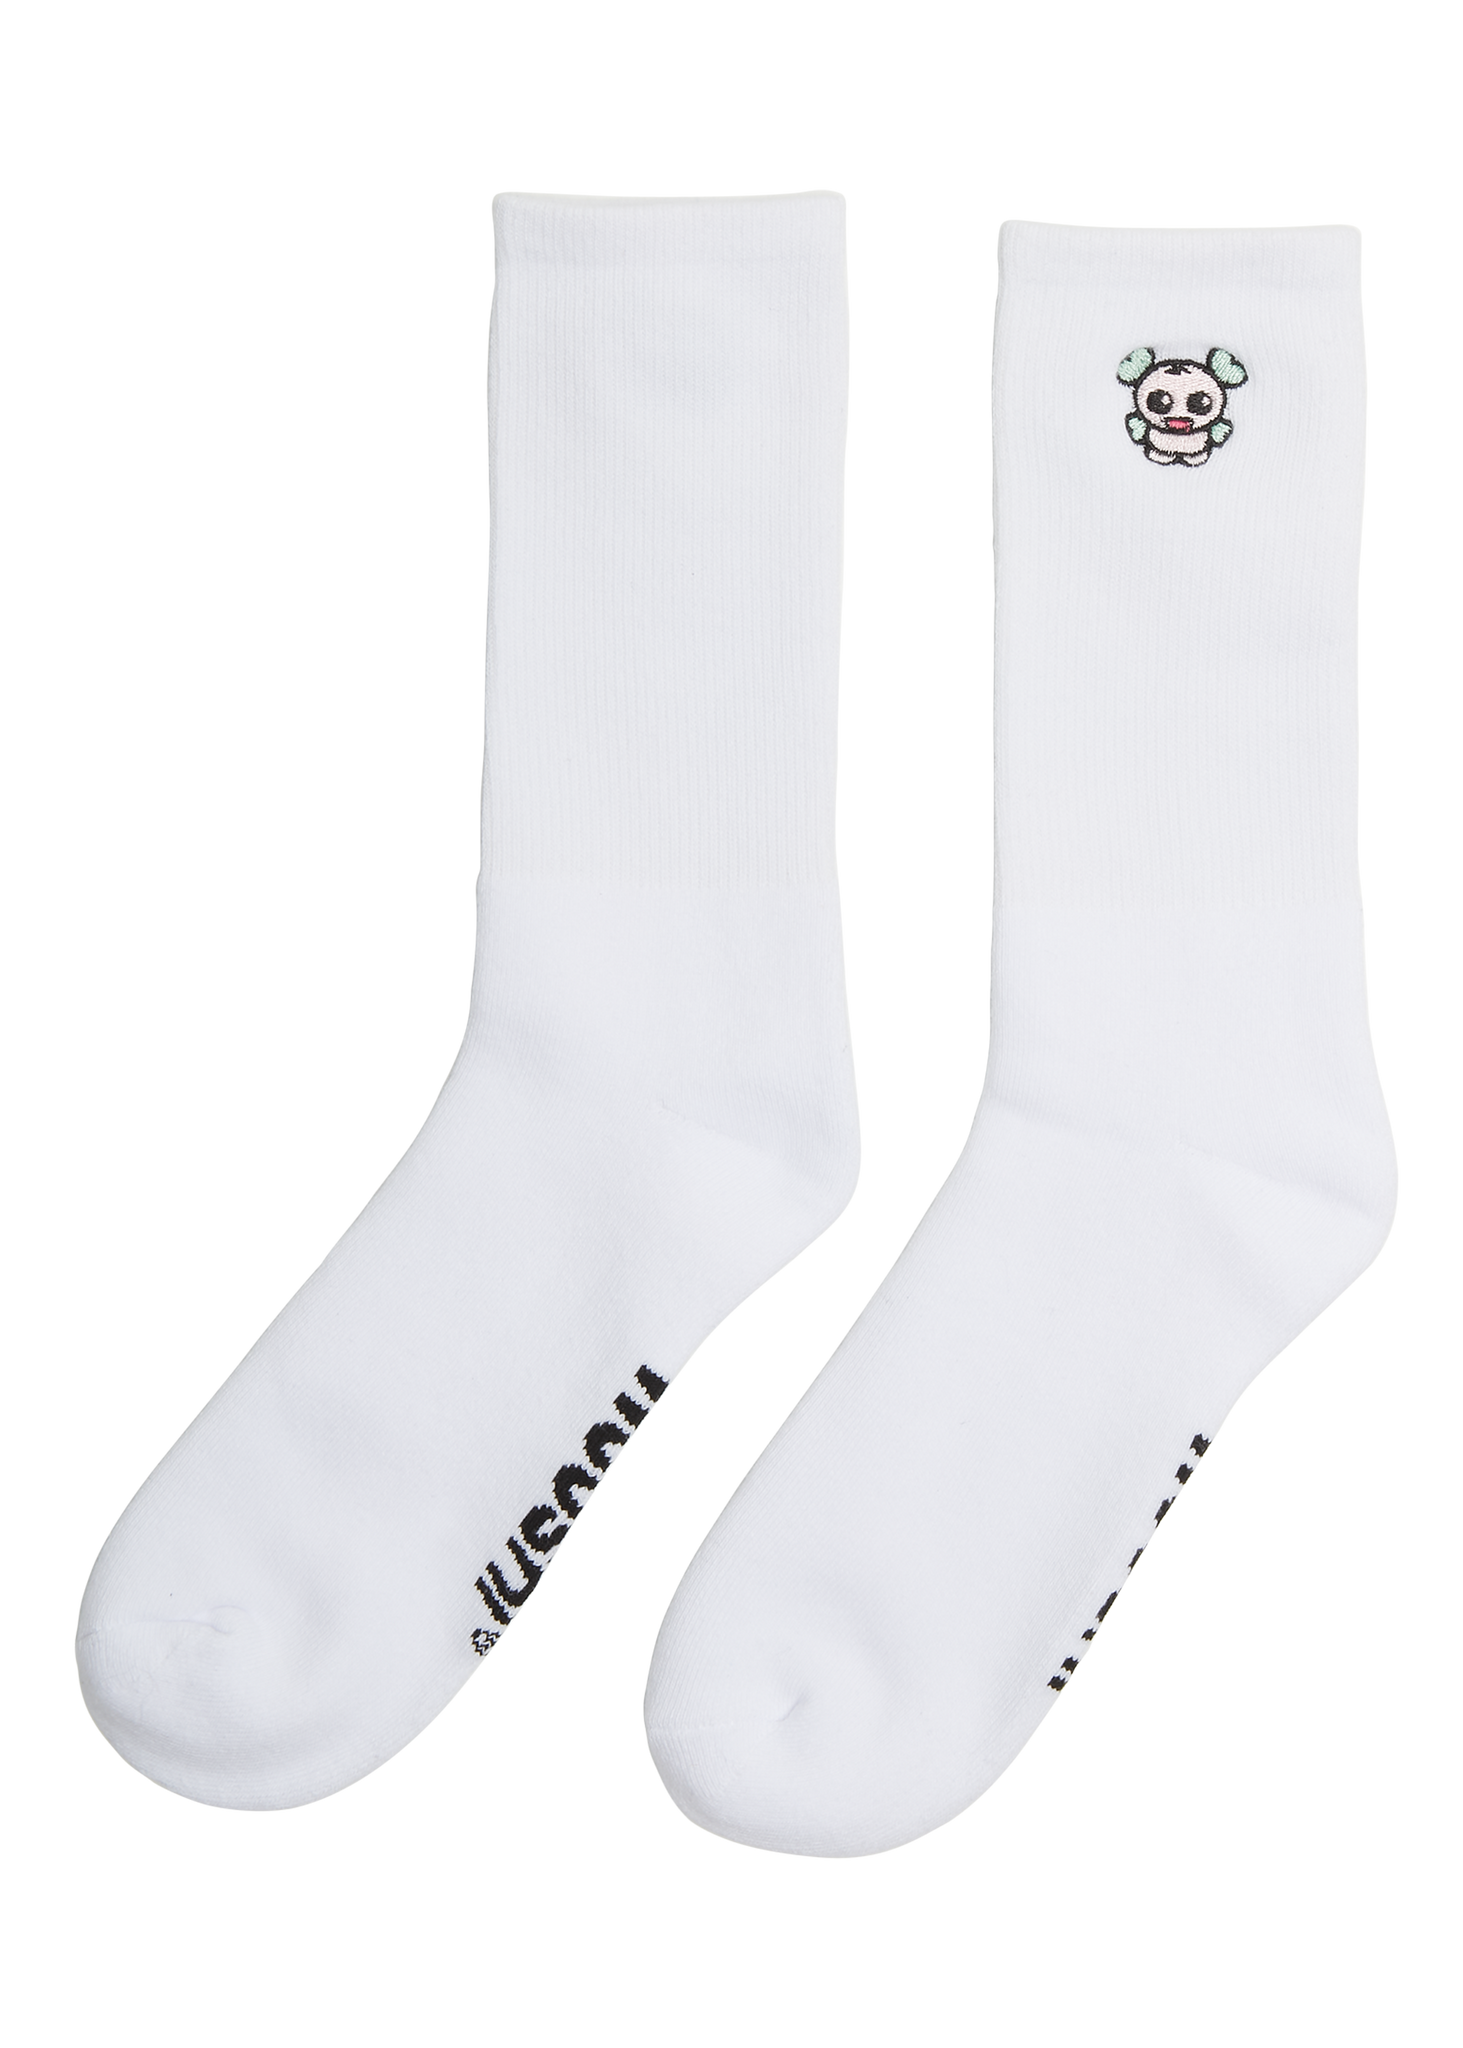 Wooshi White Embroidered Socks - H4X